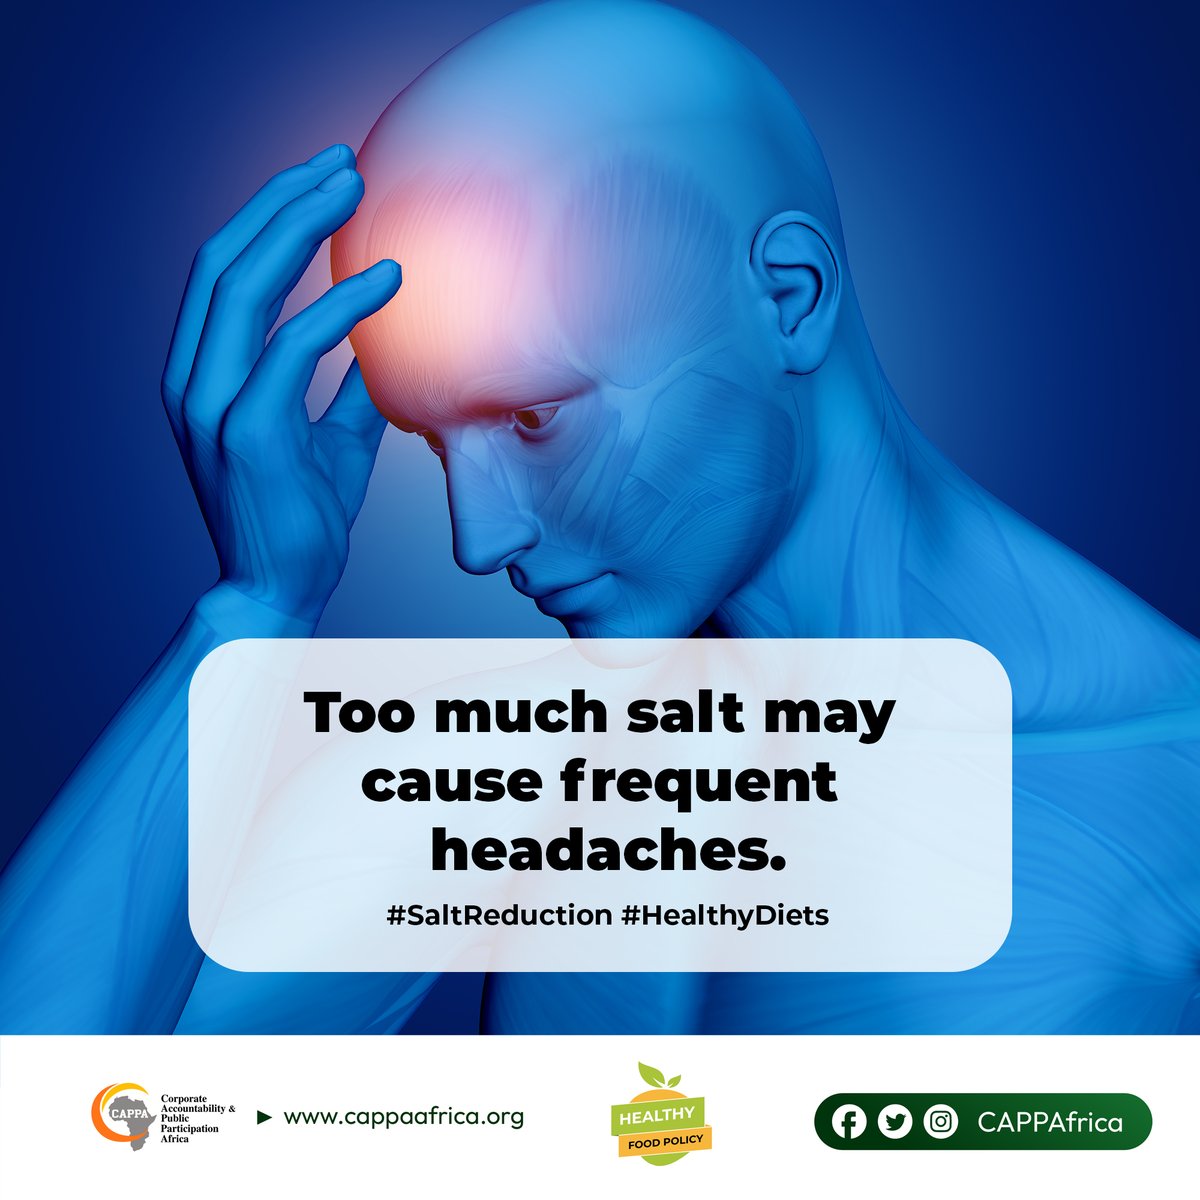 Reduce salt now! #SaltReduction #HealthyDiets